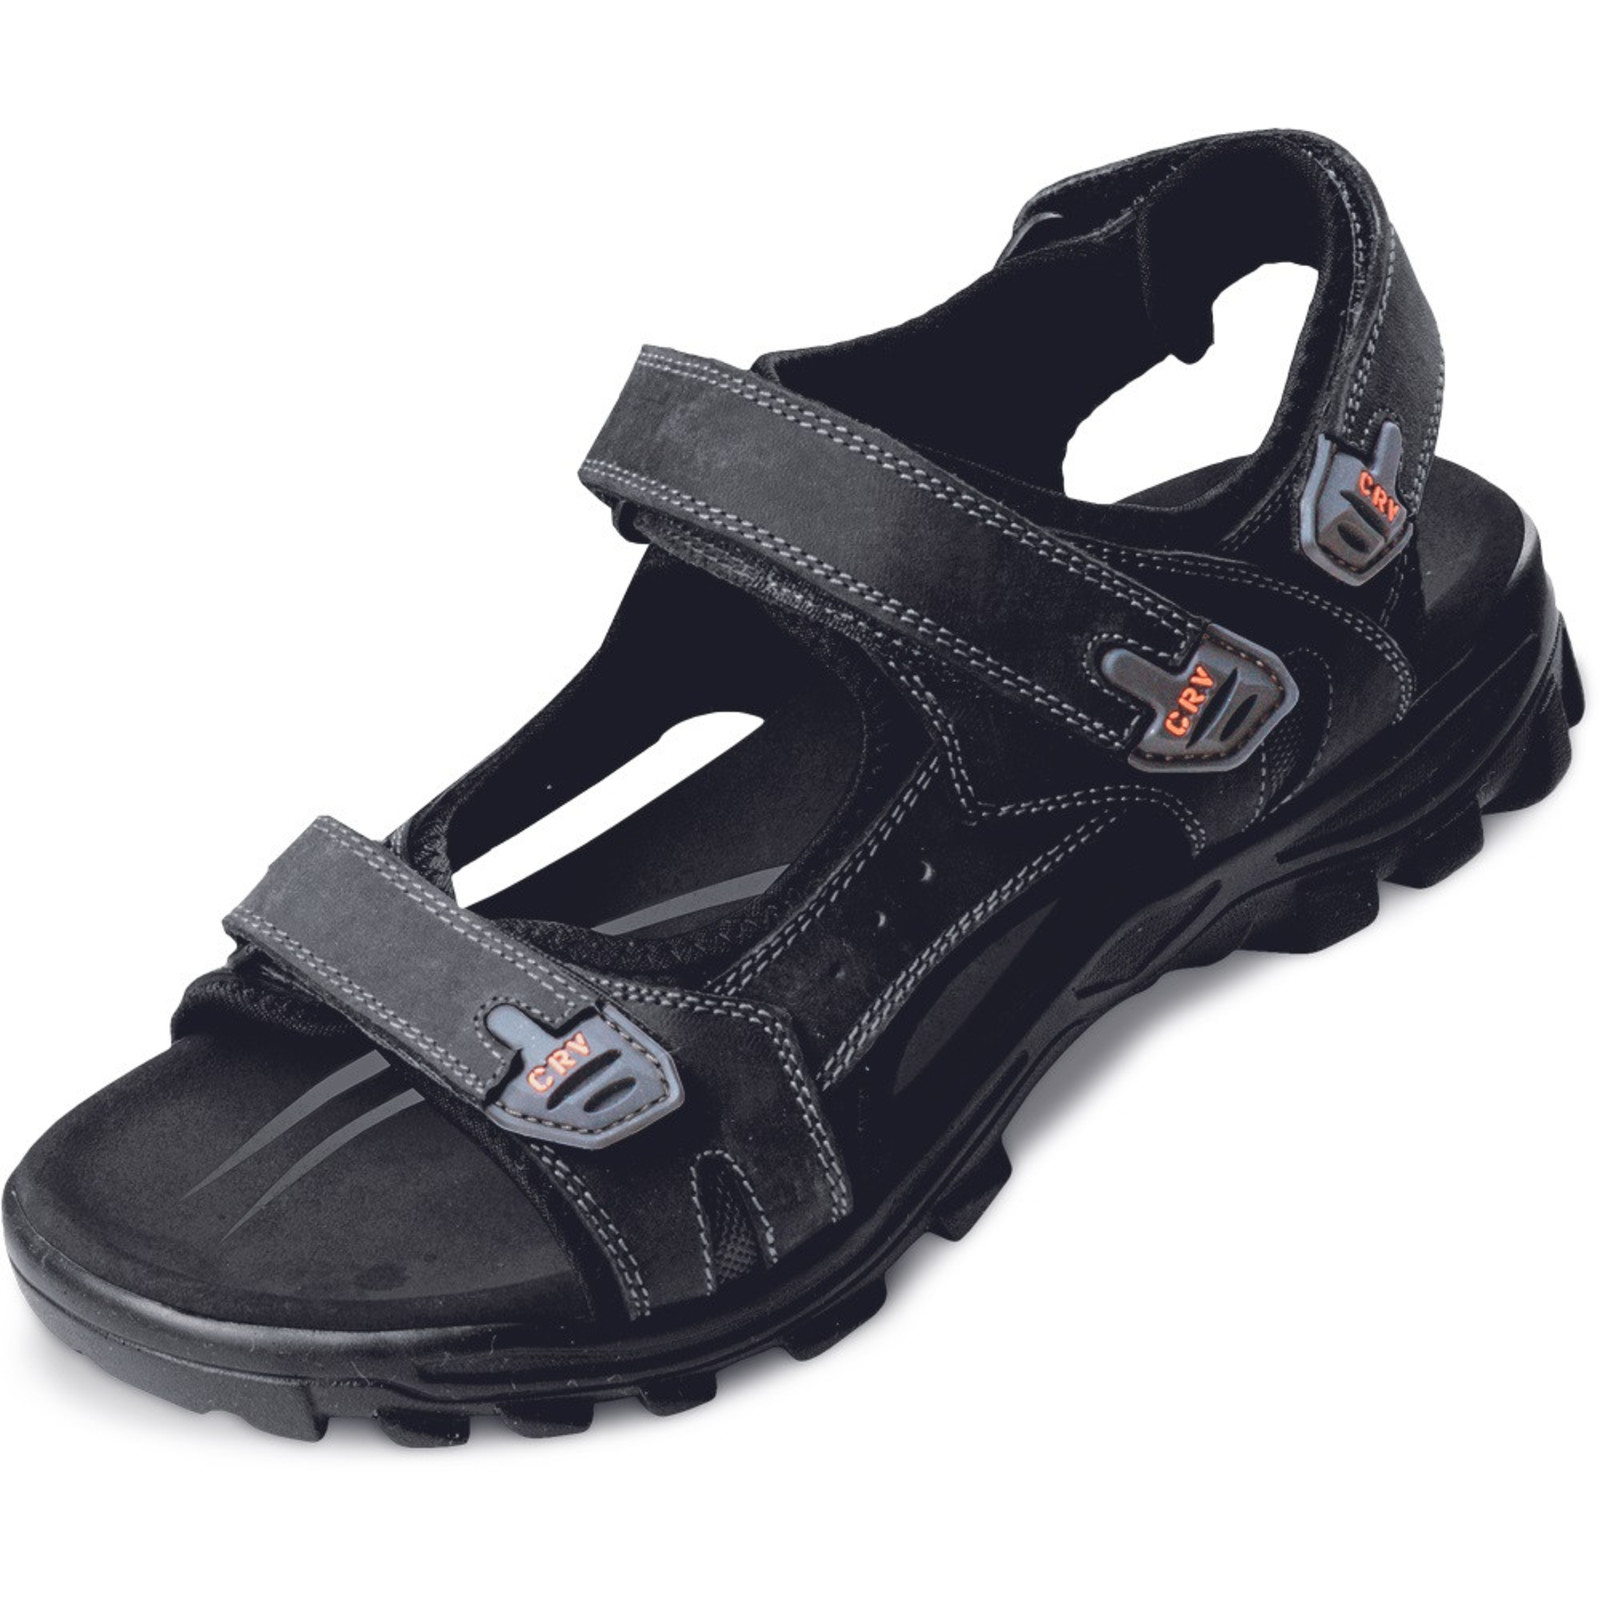 Sandále Wulik CRV pánske - veľkosť: 43, farba: čierna